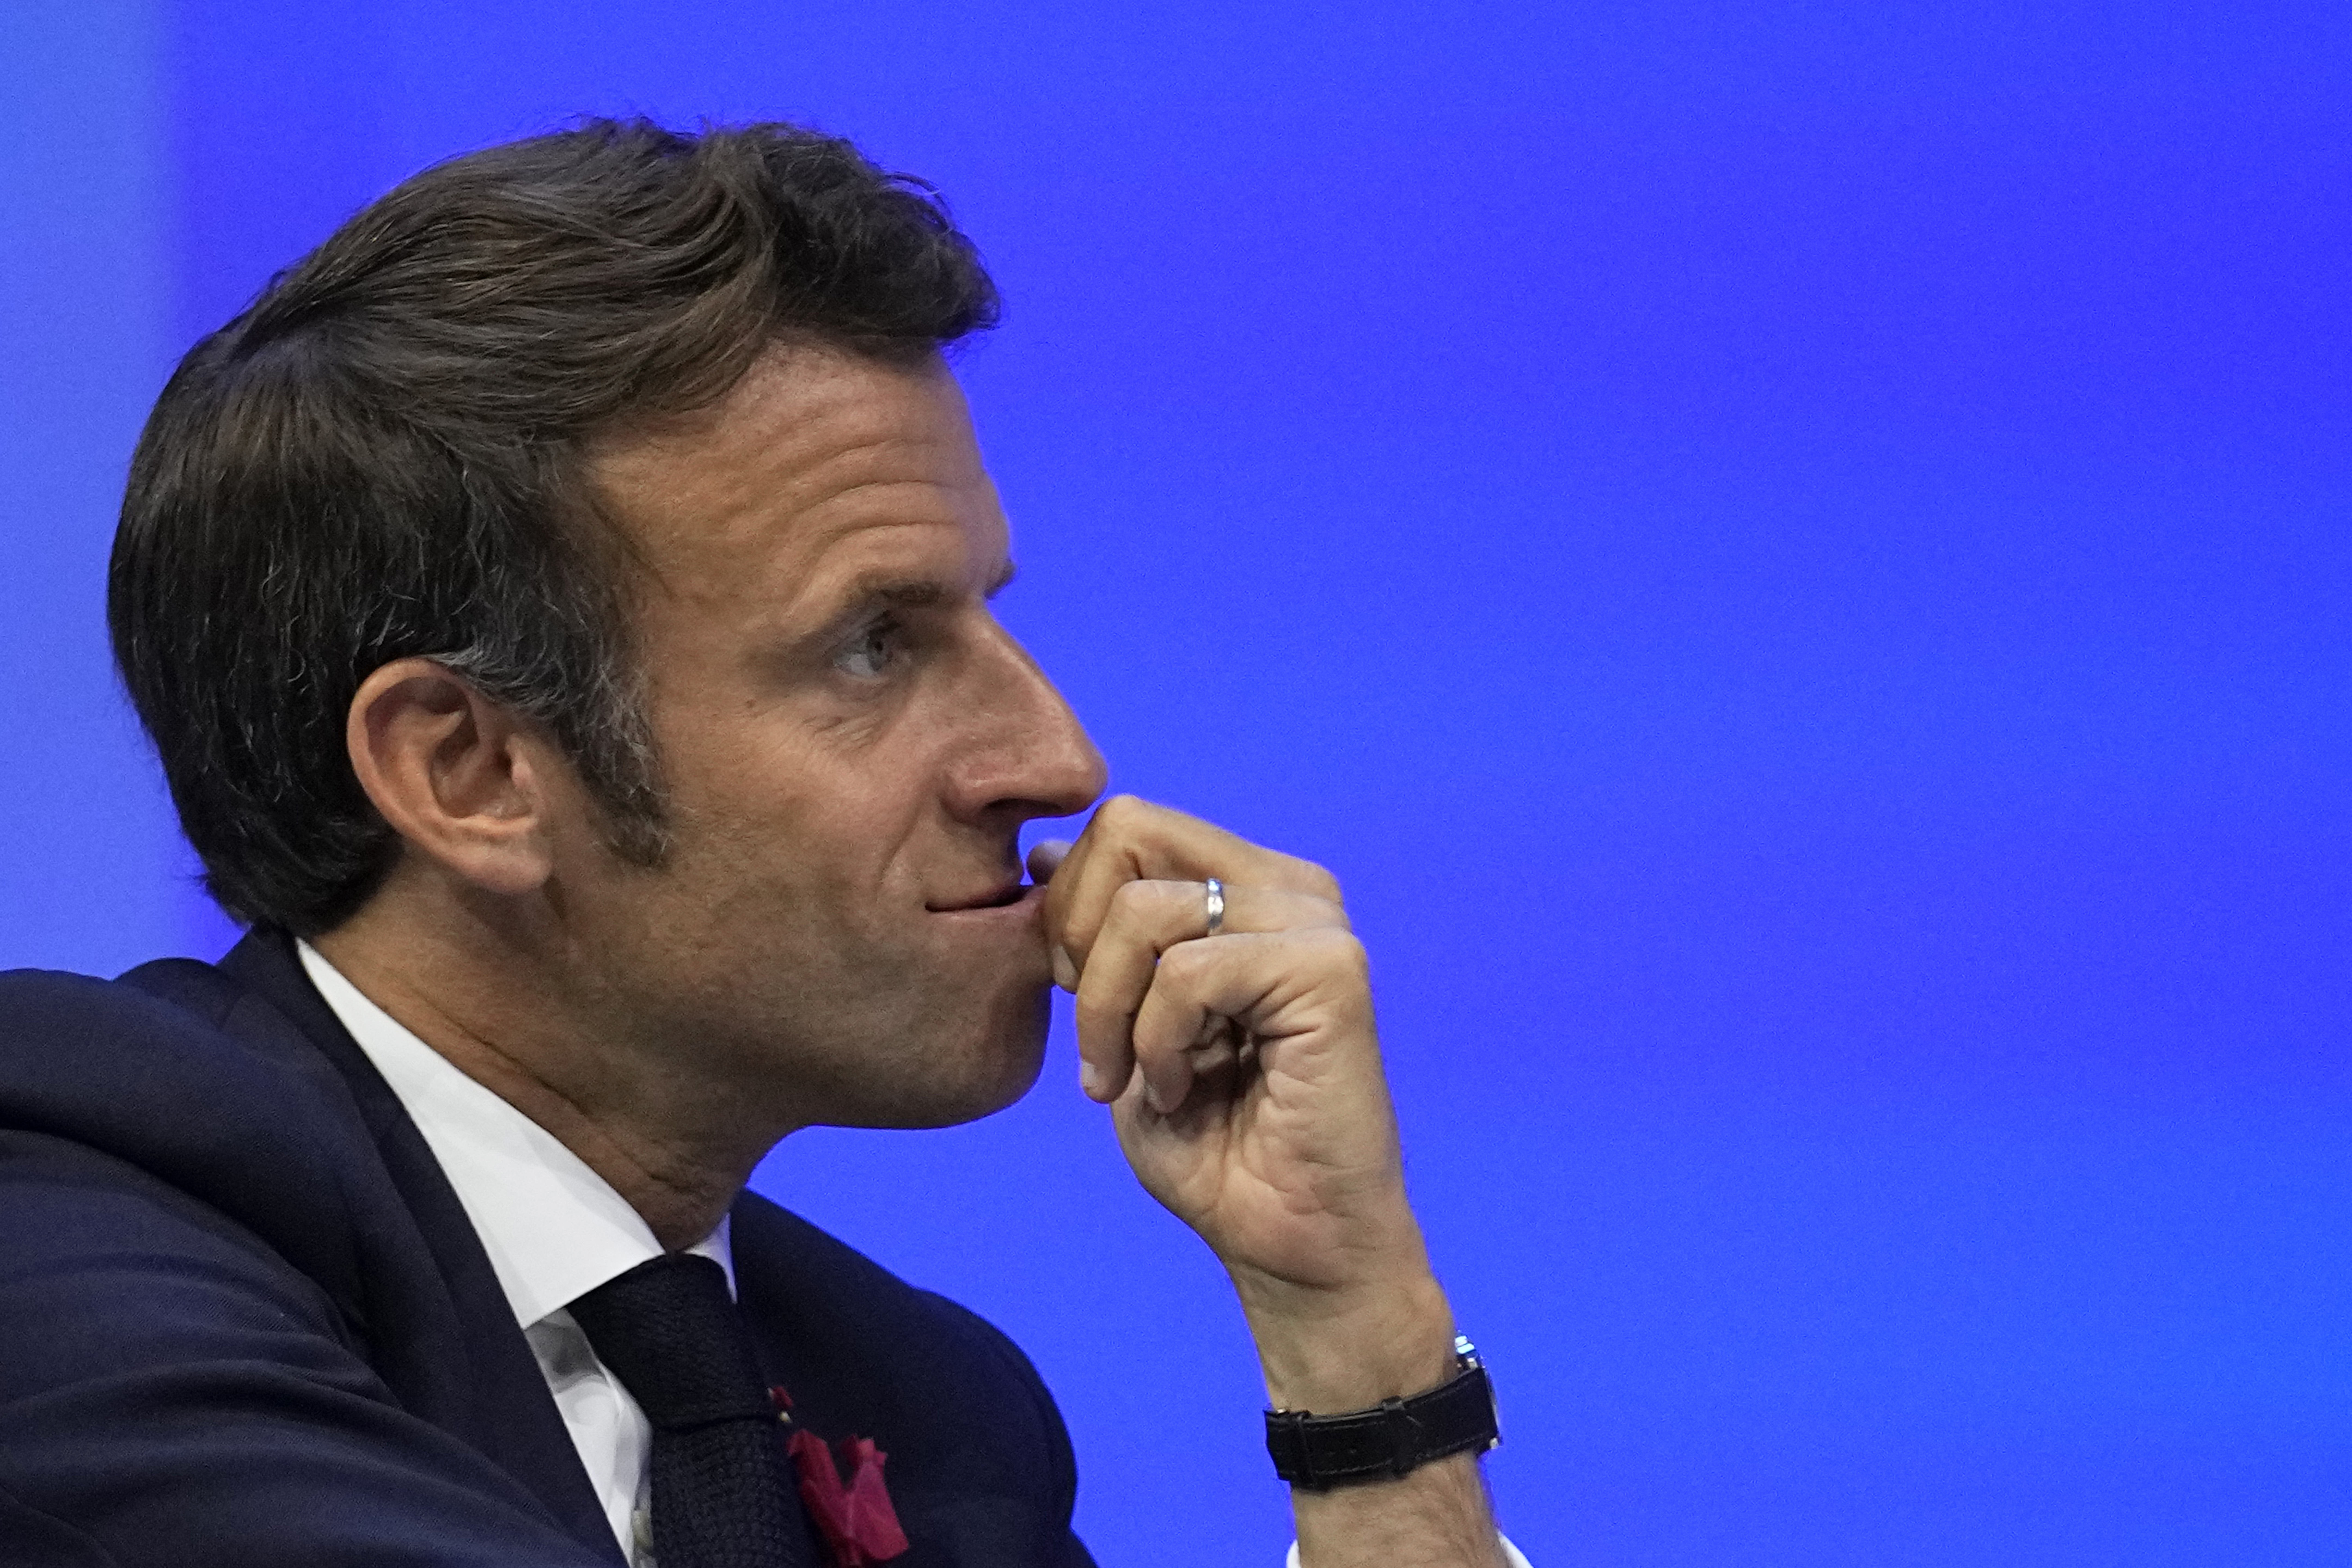 Francia választások: Hatalmasat bukott Macron koalíciója, 5 év patthelyzet elé néz a francia elnök